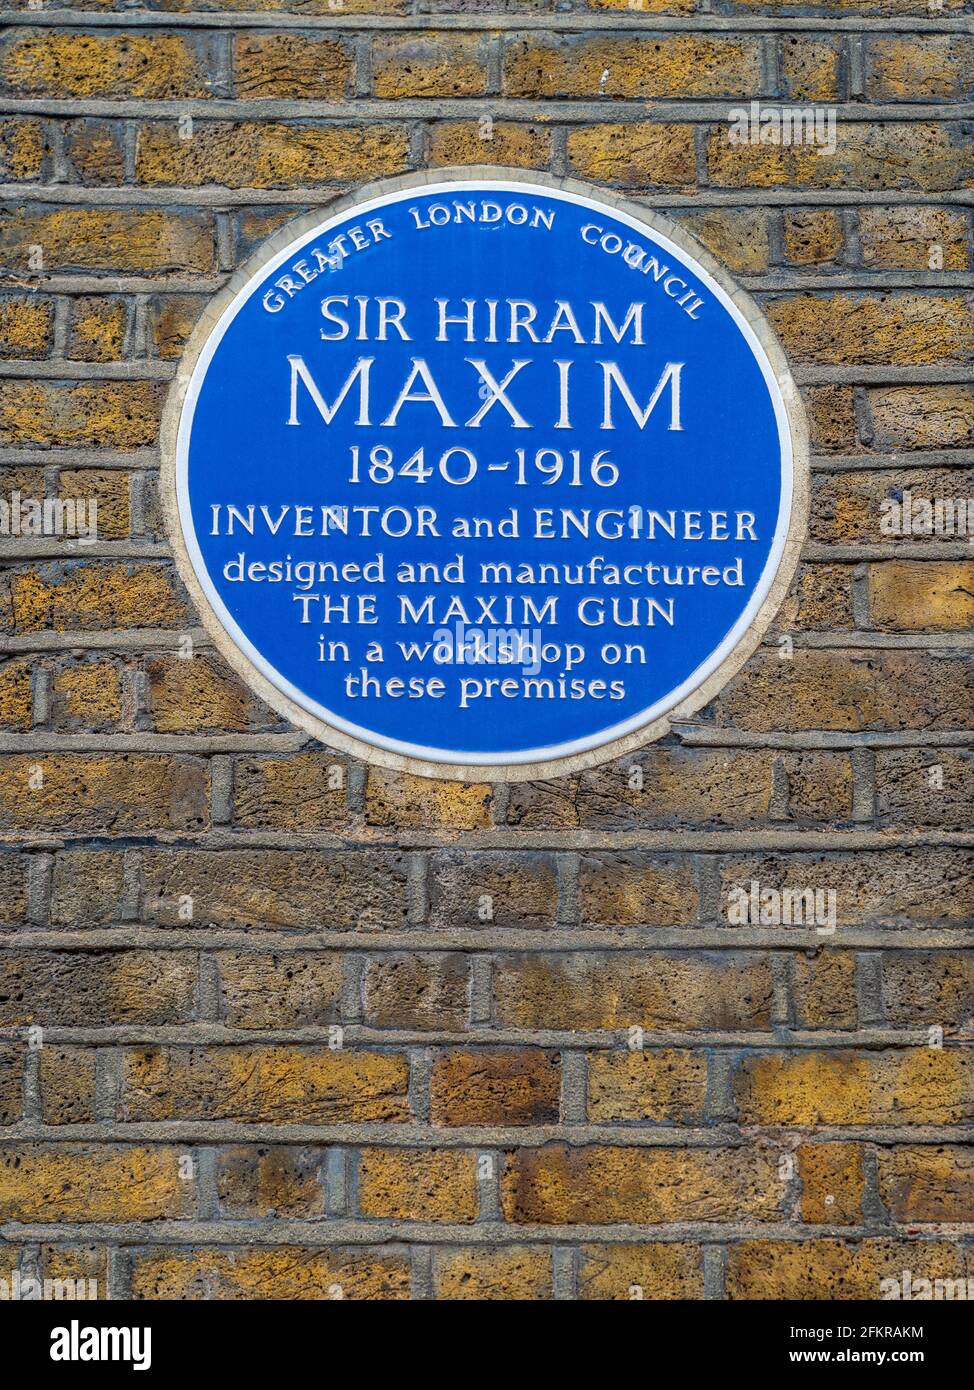 Sir Hiram Maxim Londres Placa azul - marcando la ubicación O los talleres donde Sir Hiram Maxim desarrolló y fabricó El Maxim Gun Foto de stock